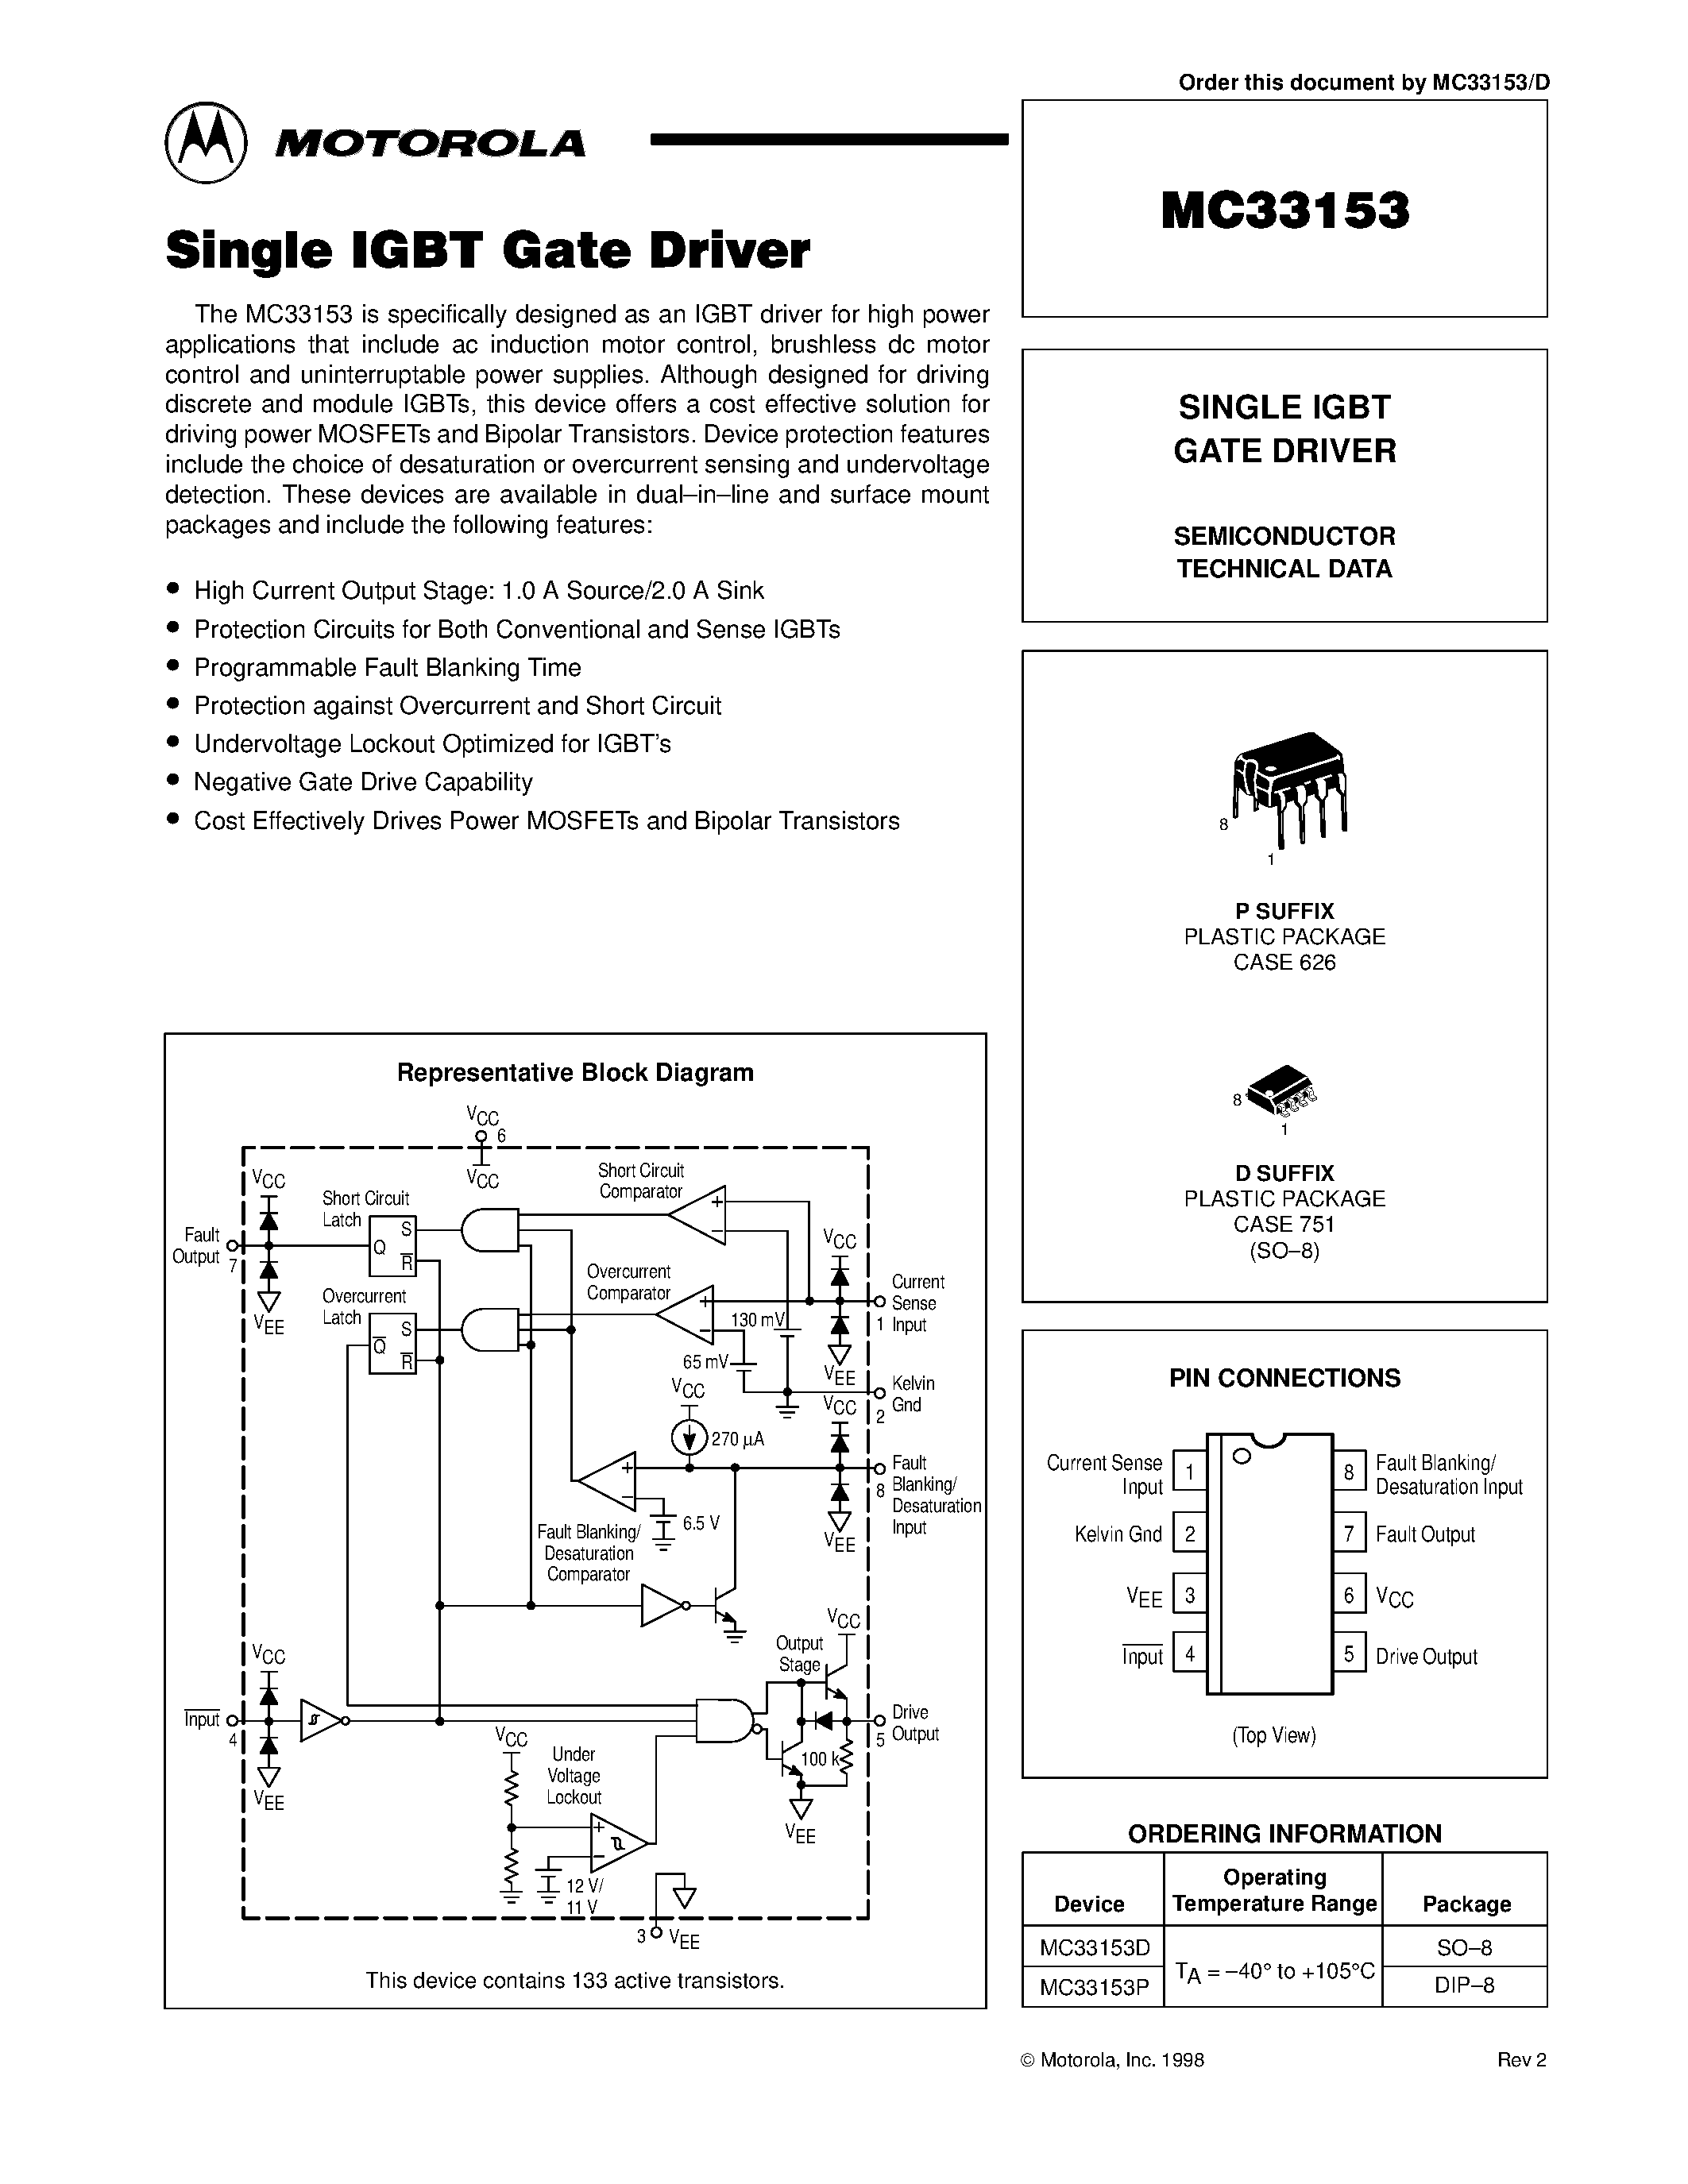 Datasheet MC33153 - SINGLE IGBT GATE DRIVER page 1